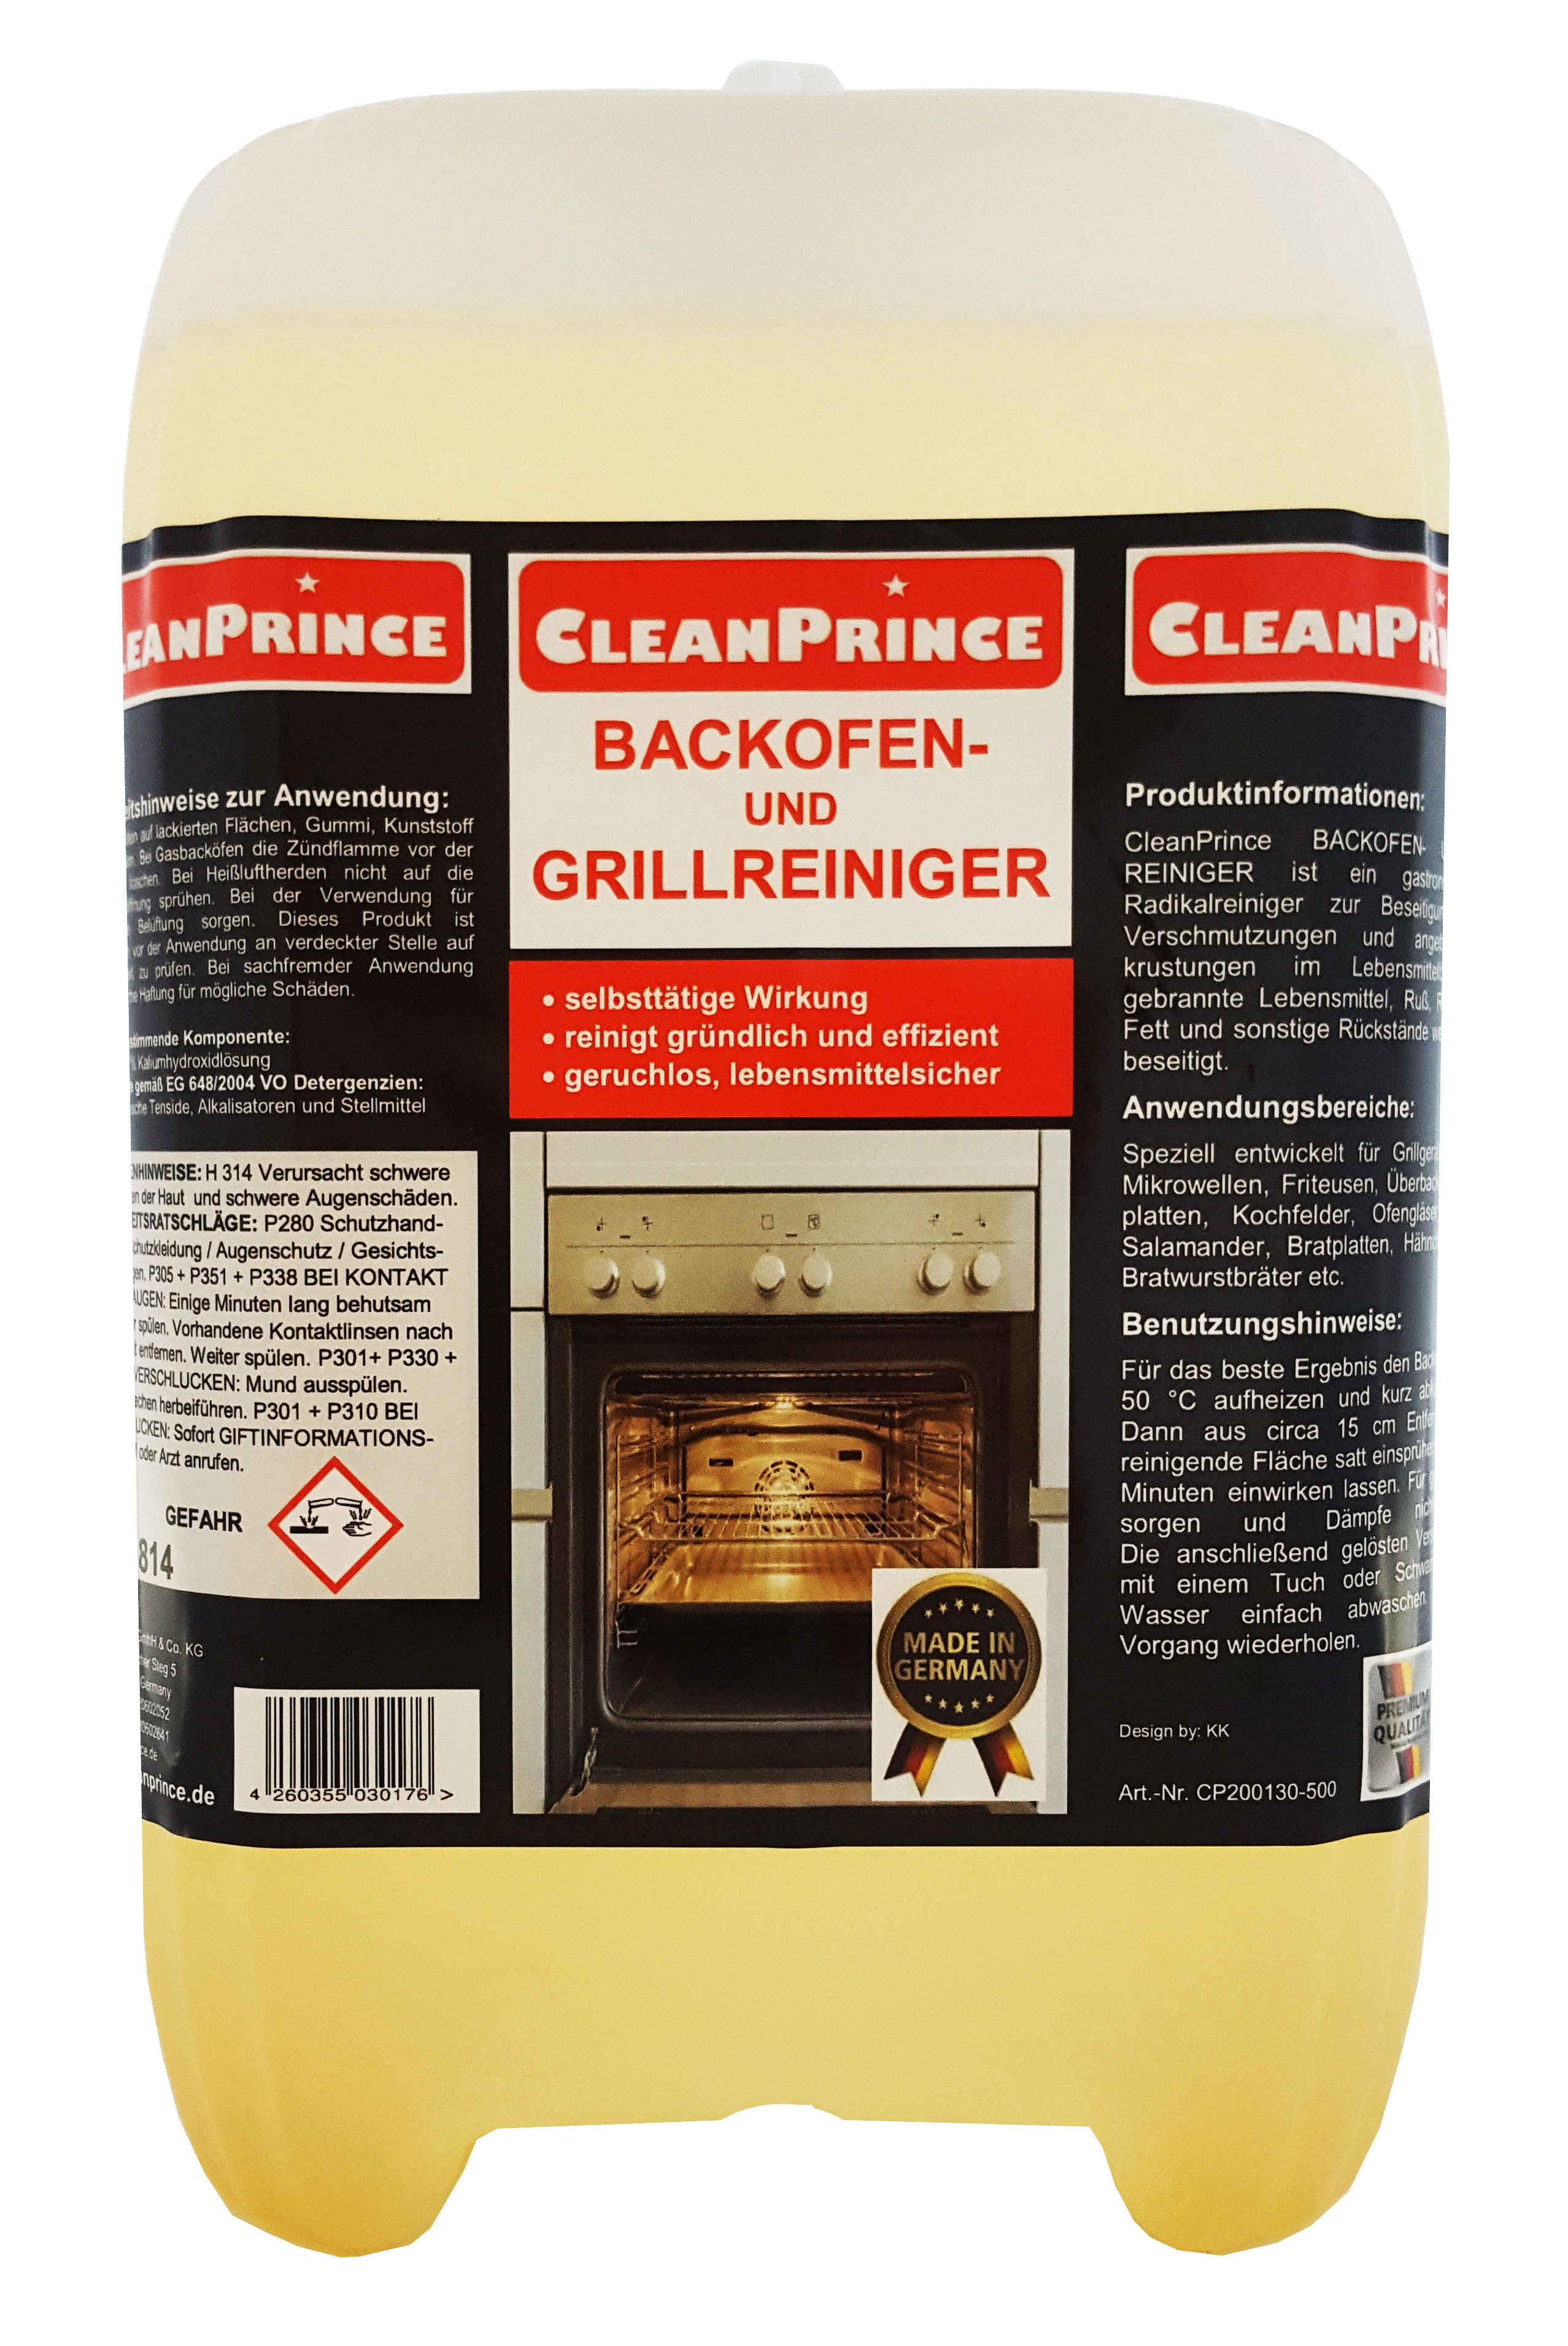 CleanPrince Backofen- und Grill - Reiniger, Backofenreiniger Grillreiniger Backofenreiniger (Beseitigung massivster Verkrustungen)